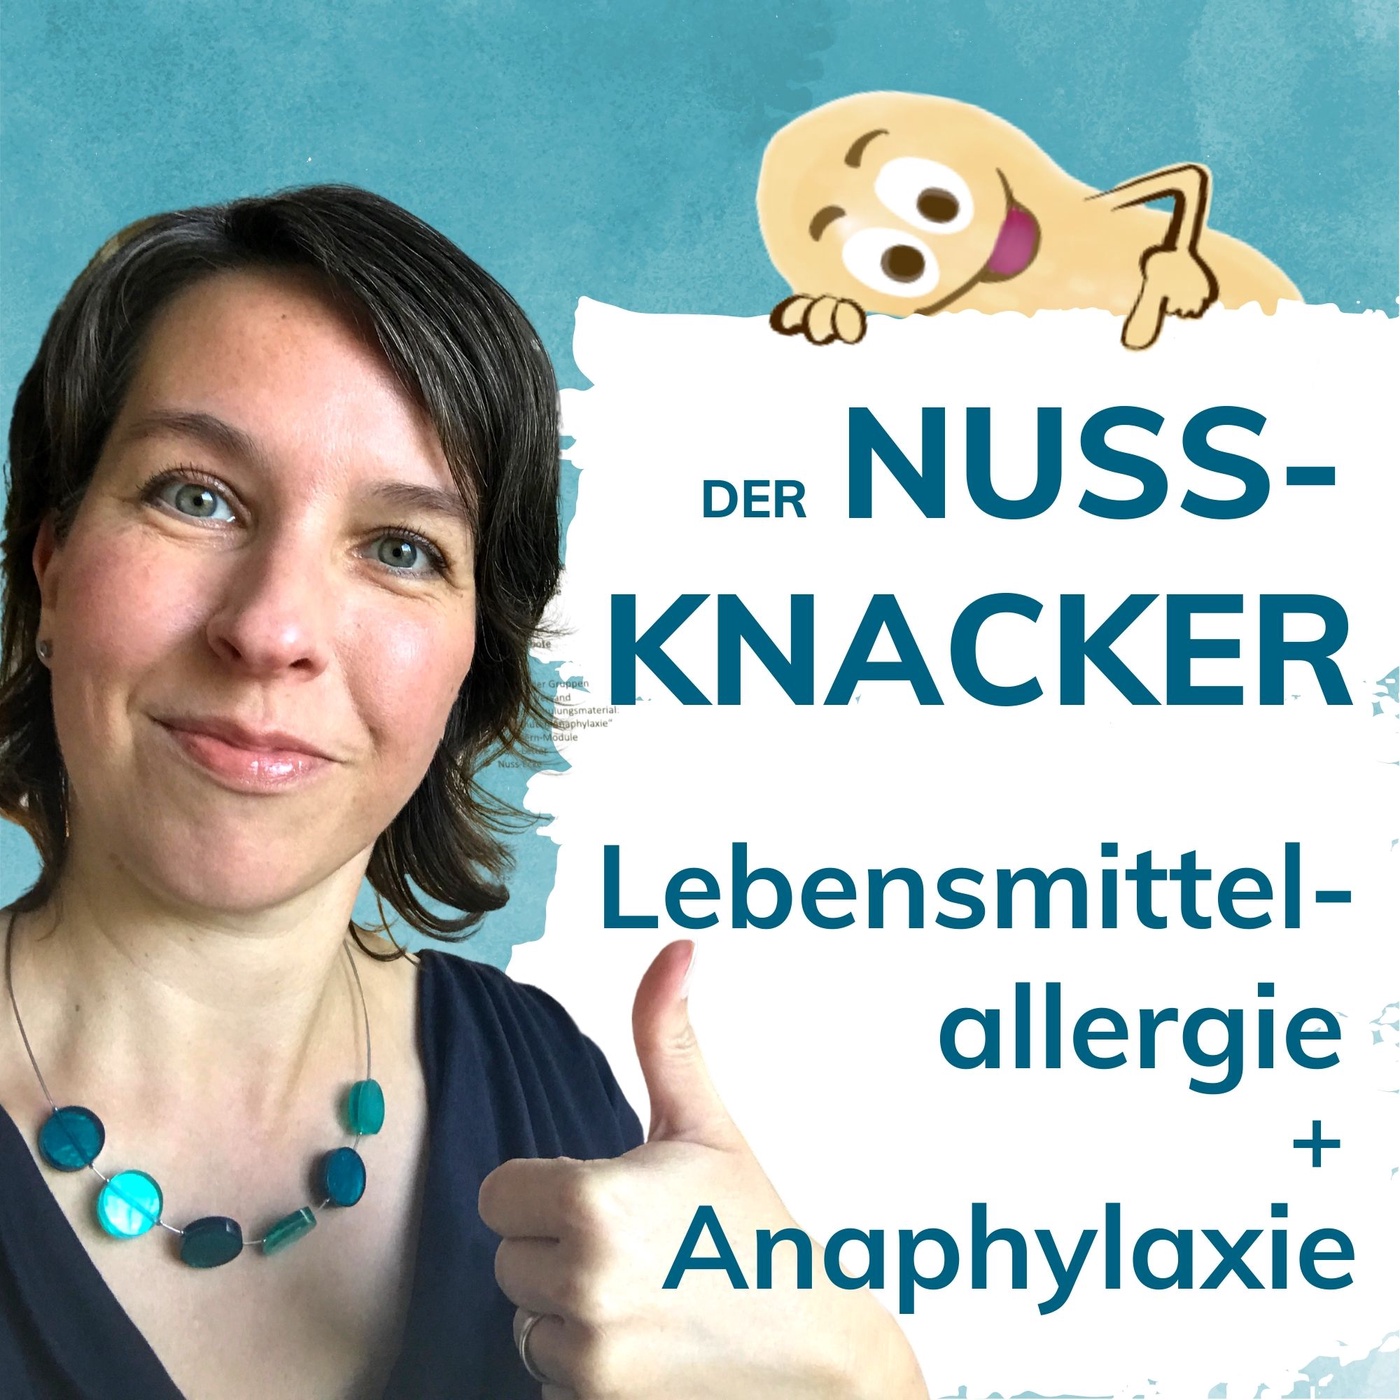 Der Nuss-Knacker: Leben mit Nahrungsmittelallergien und Anaphylaxie